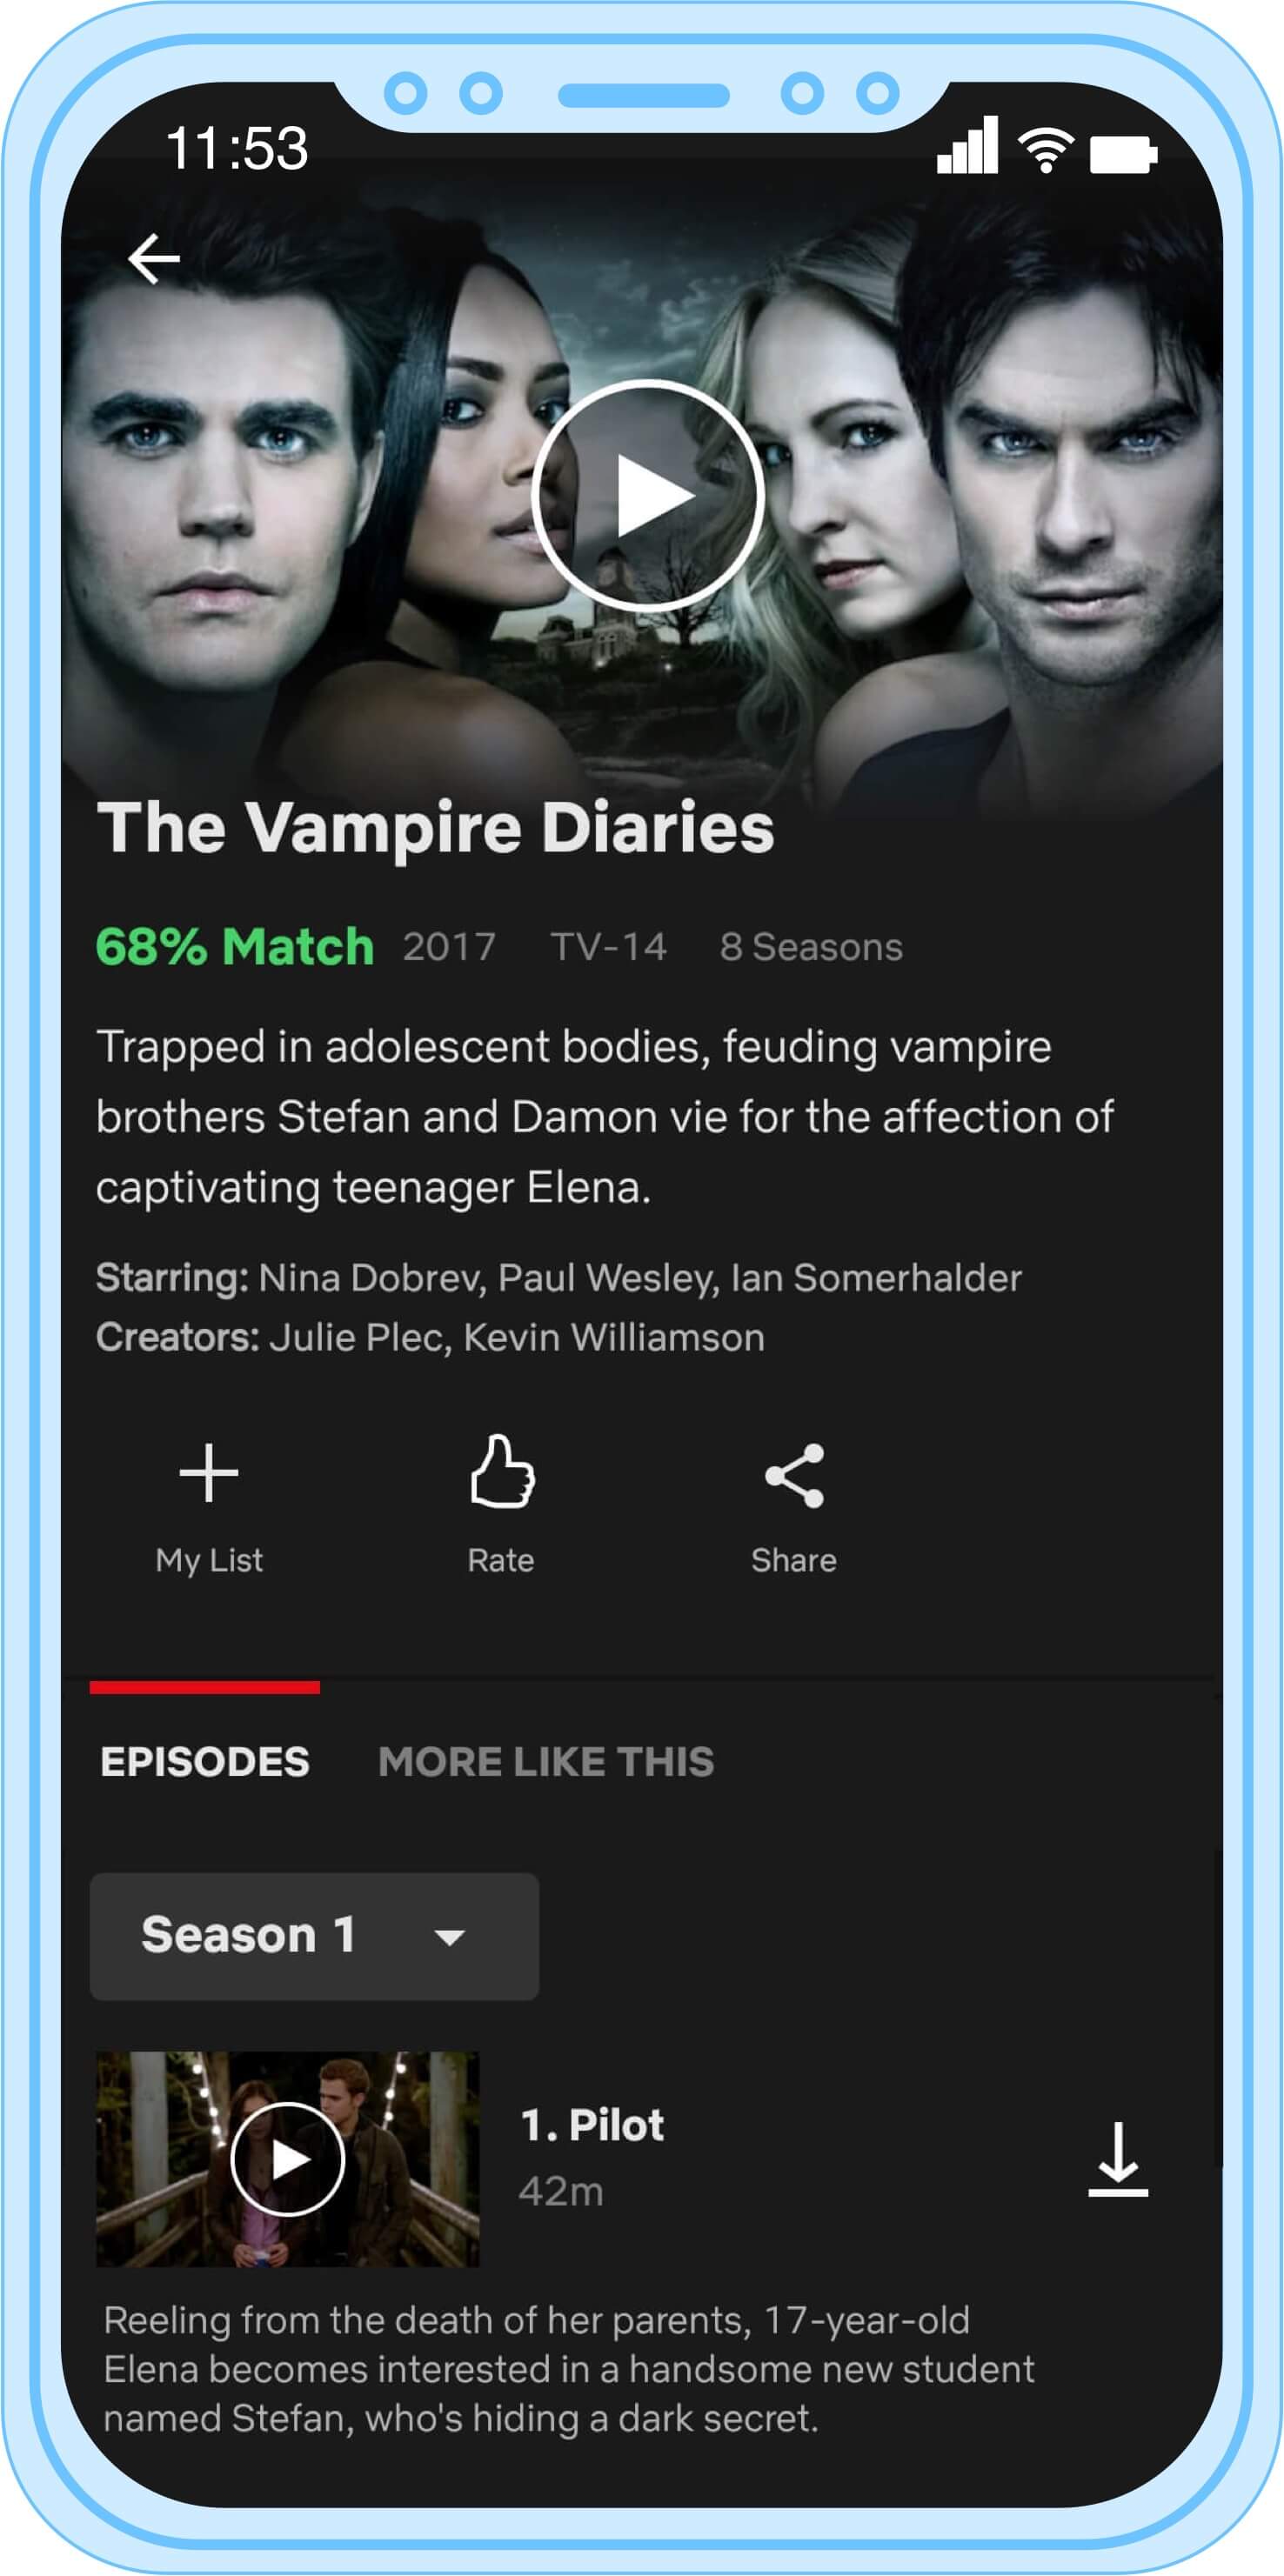 The Vampire Diaries - Netflix Series - Where To Watch